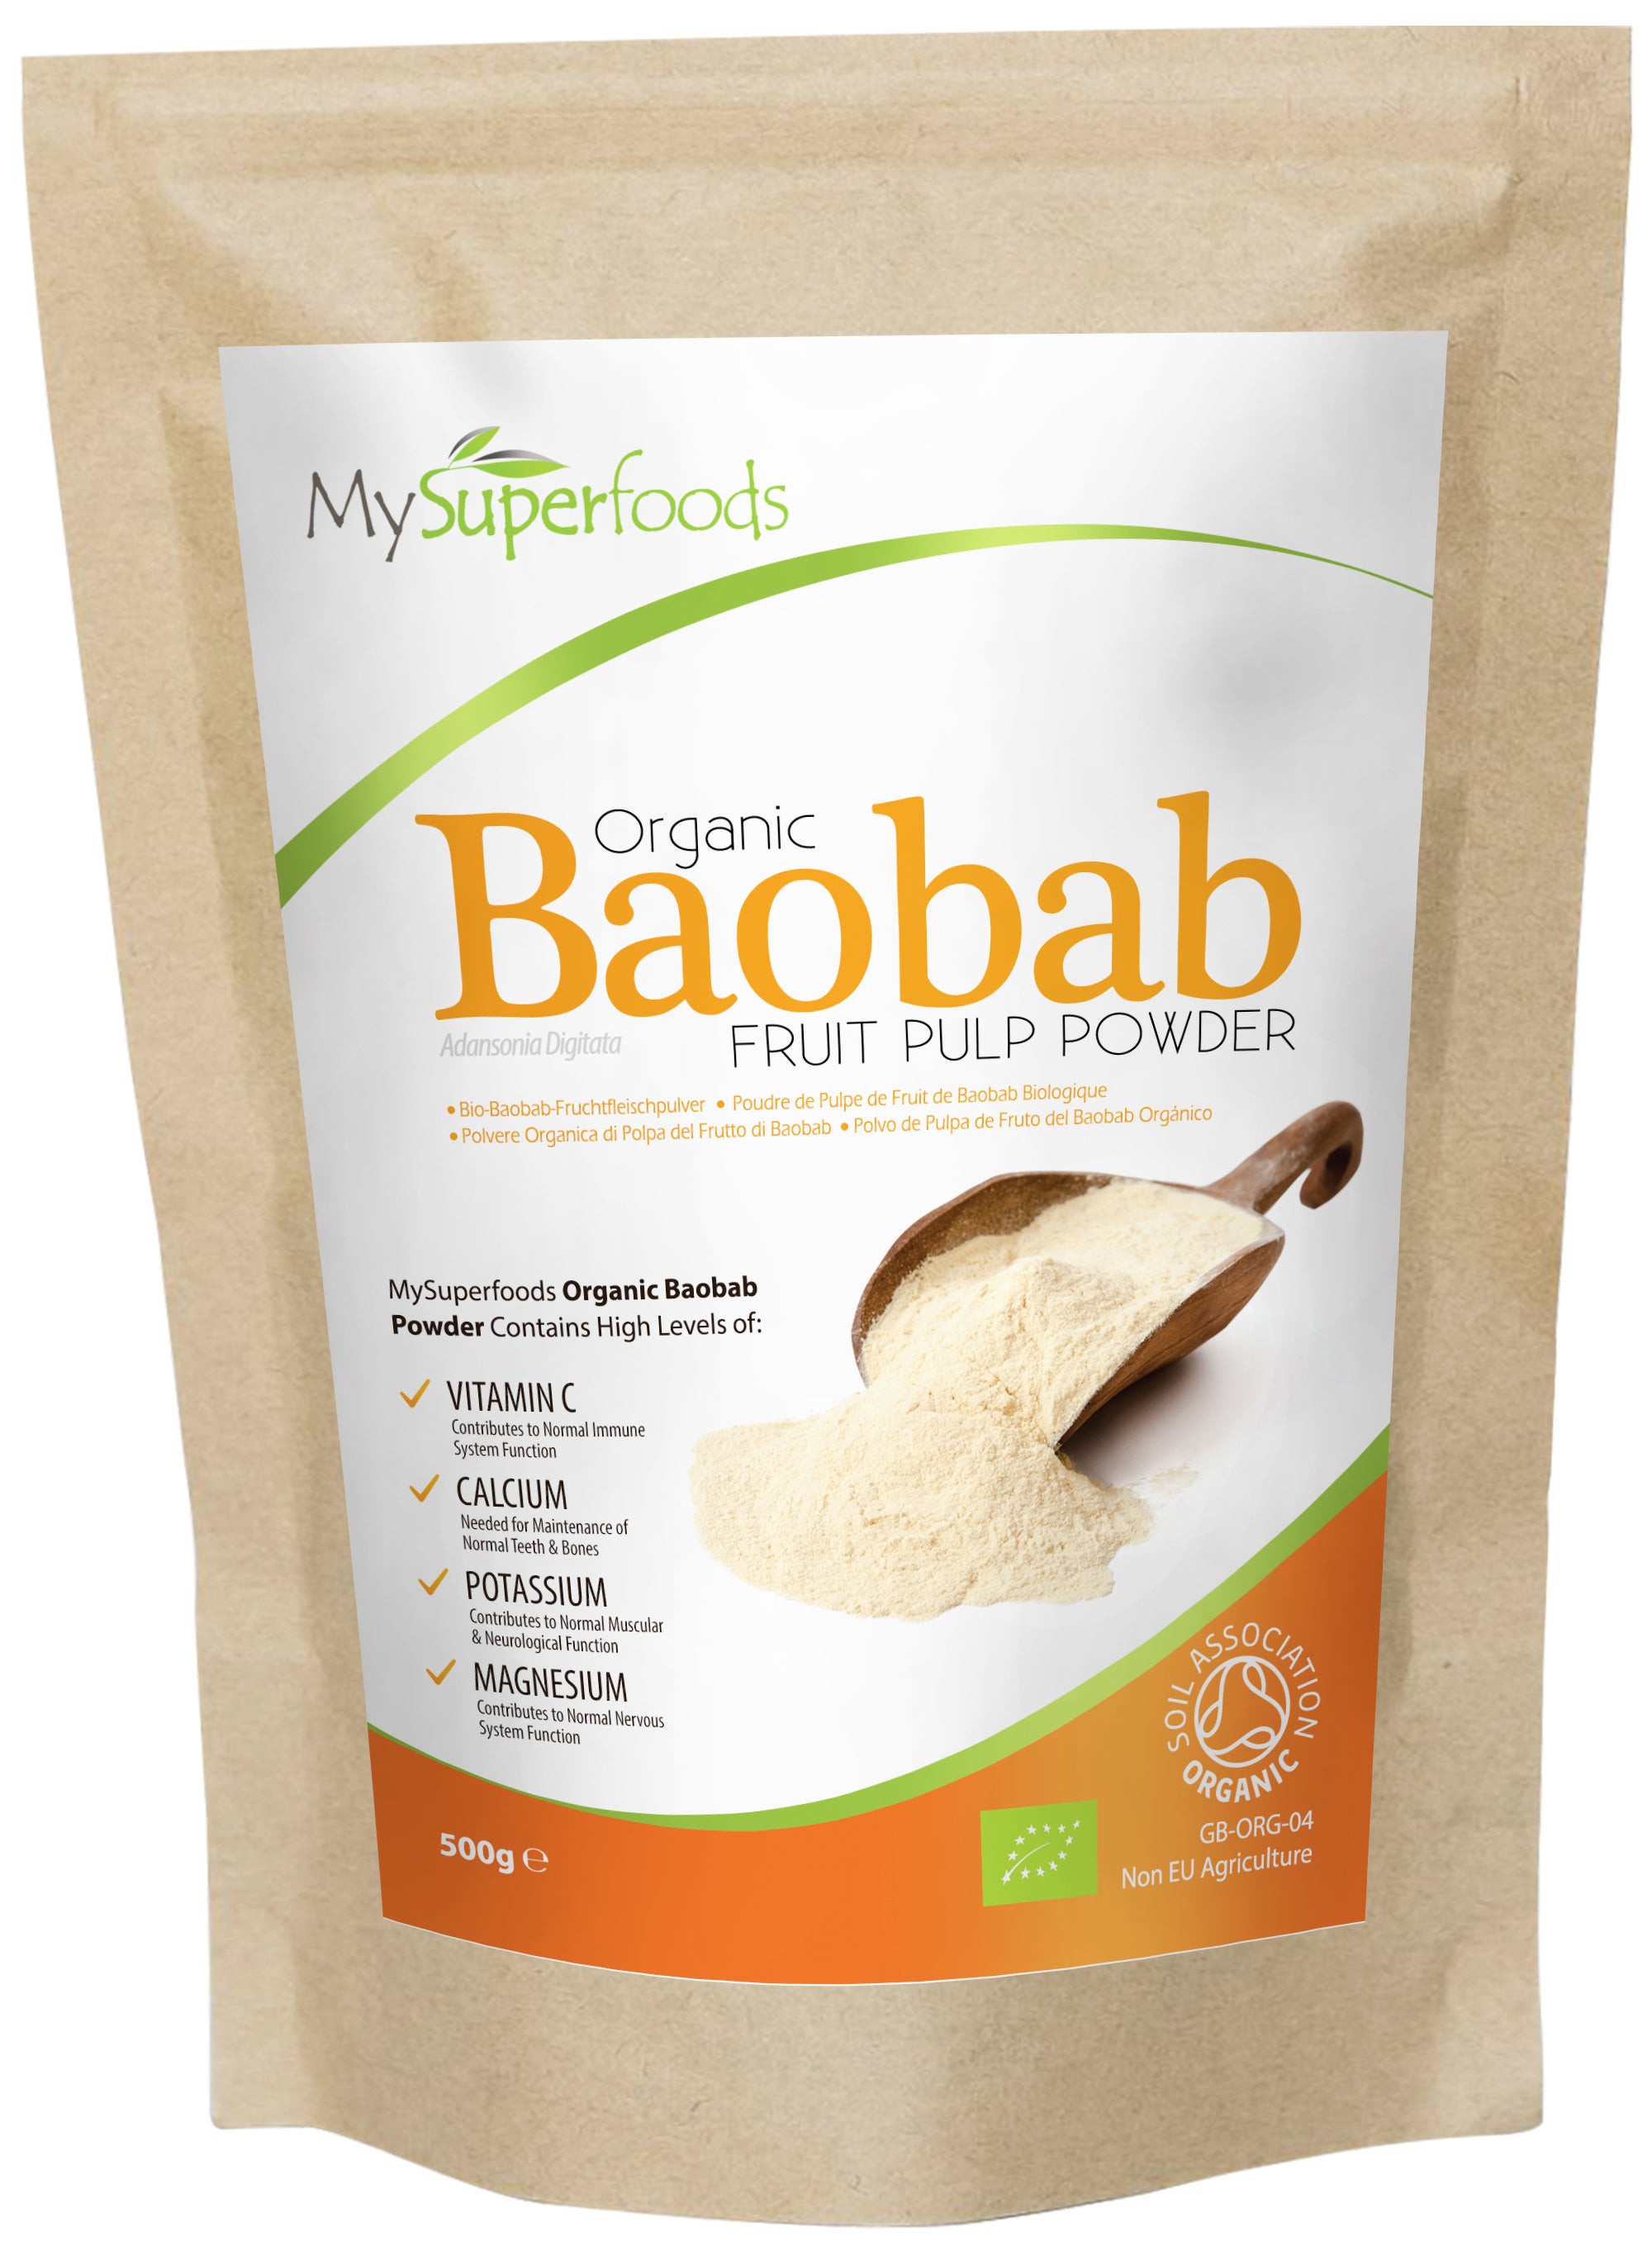 Les bienfaits pour la santé de poudre Baobab